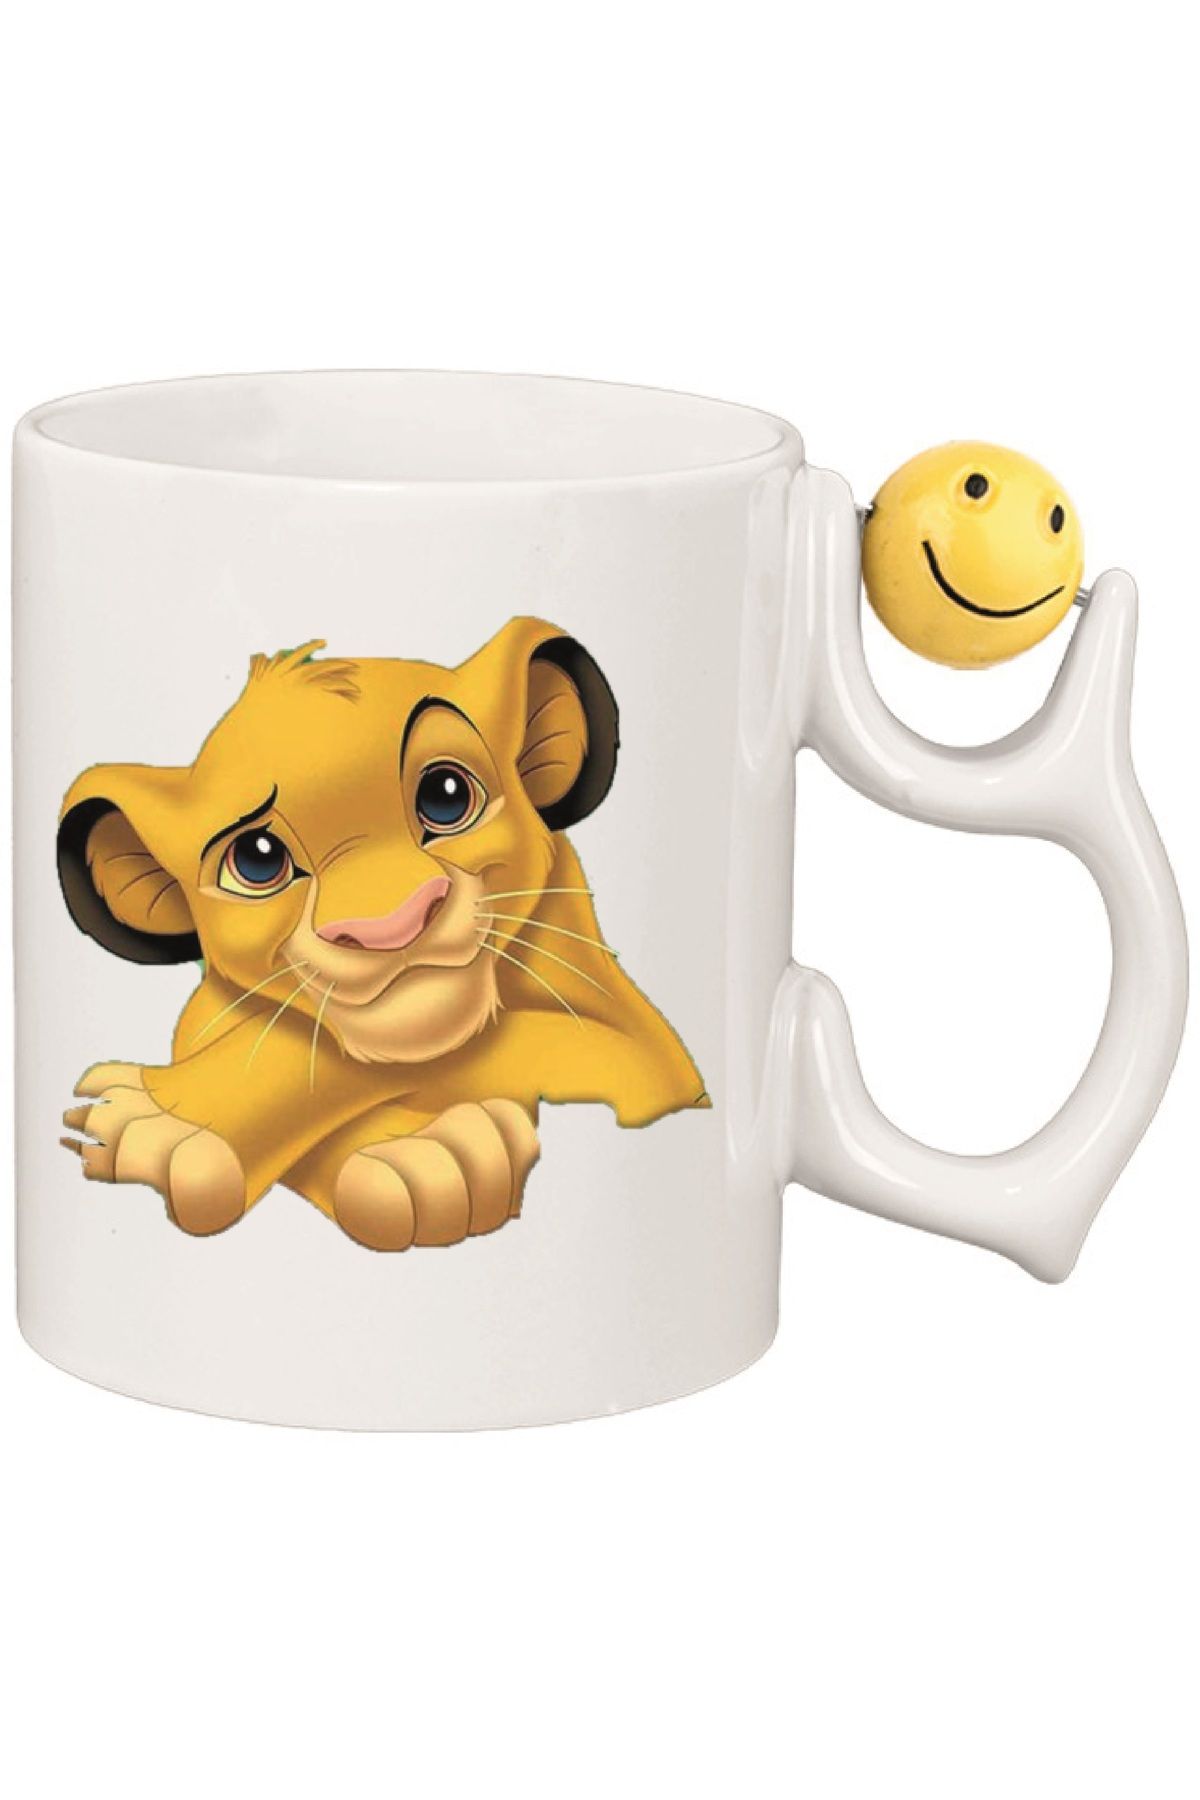 newayerwest Kişiye Özel Aslan Kral Simbaa Çocuk Emoji Kalp Kulplu Süblimasyon Baskılı Porselen Kupa Bardak